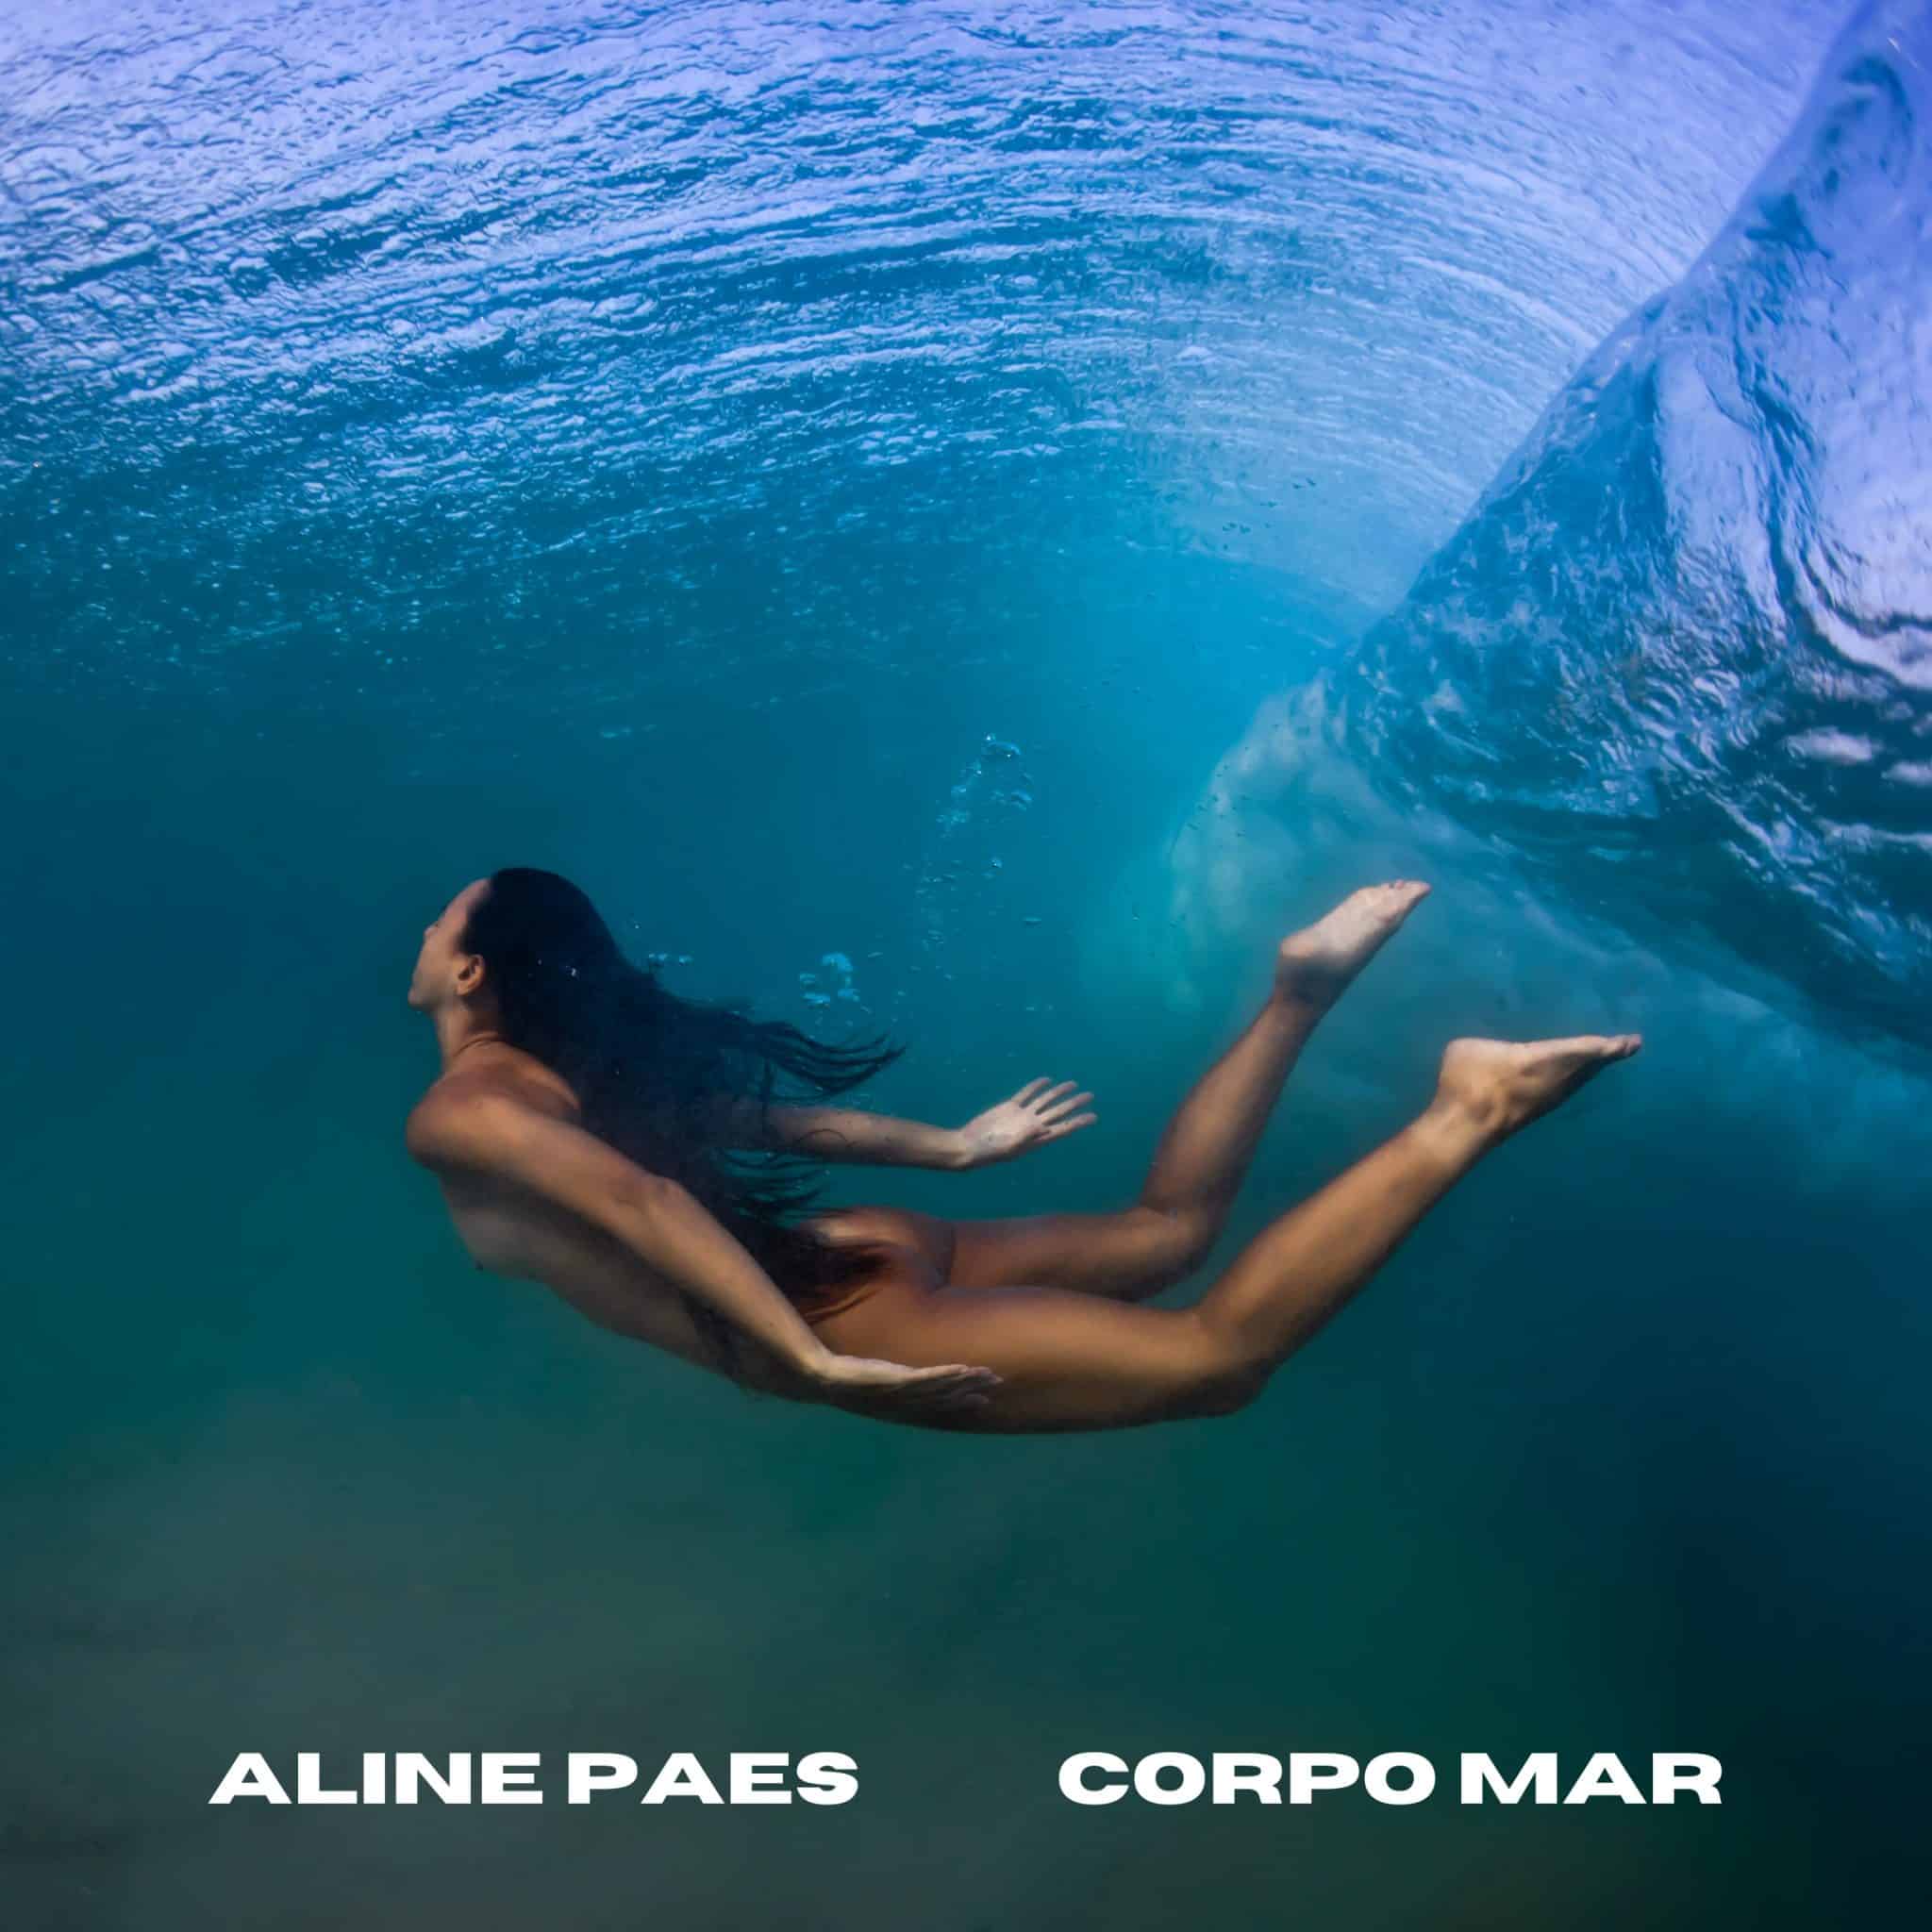 revistaprosaversoearte.com - Cantora Aline Paes lança álbum "Corpo Mar"